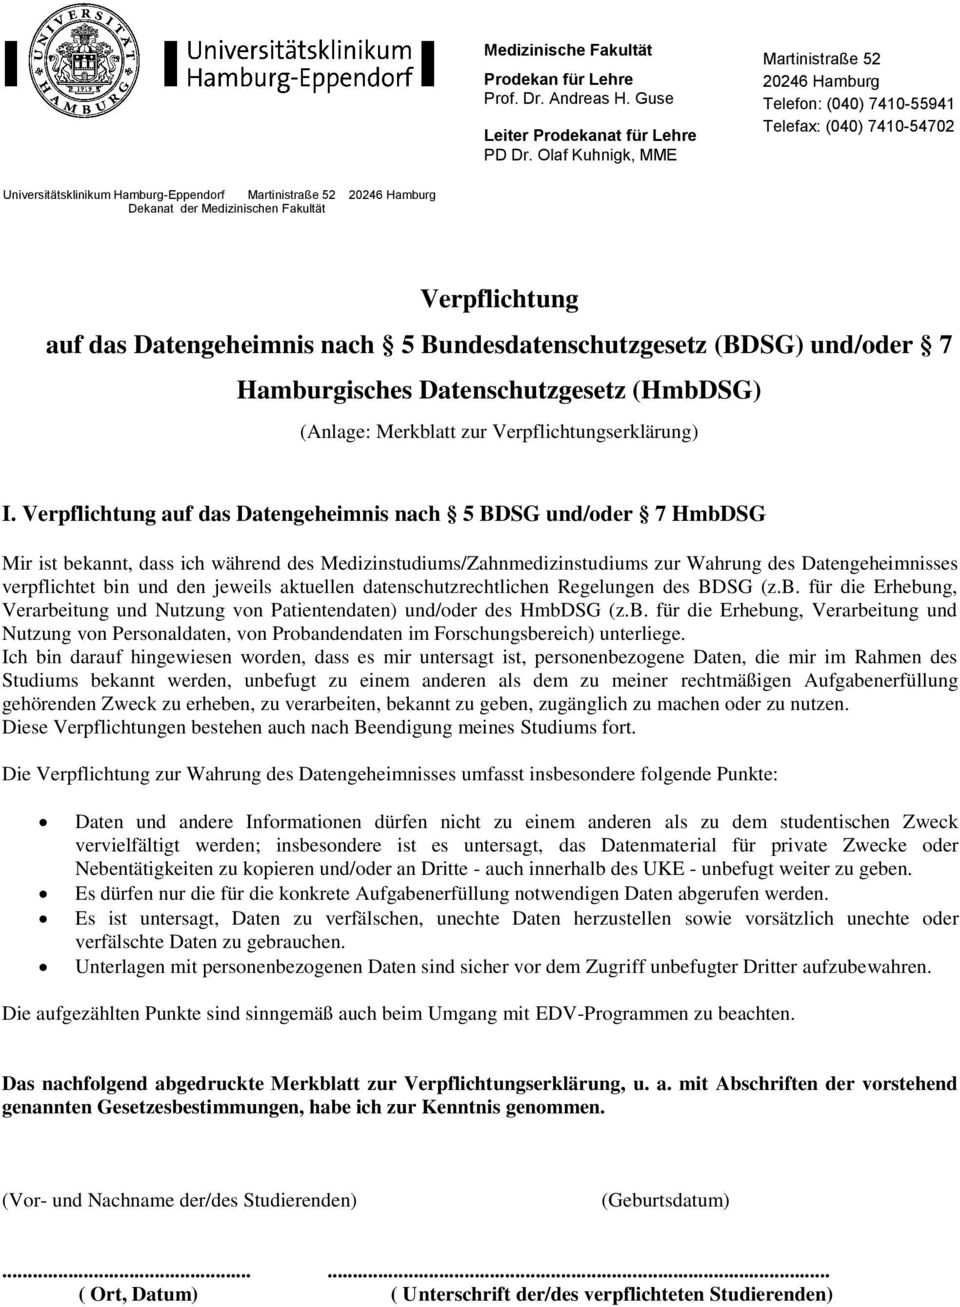 Fakultät Verpflichtung auf das Datengeheimnis nach 5 Bundesdatenschutzgesetz (BDSG) und/oder 7 Hamburgisches Datenschutzgesetz (HmbDSG) (Anlage: Merkblatt zur Verpflichtungserklärung) I.